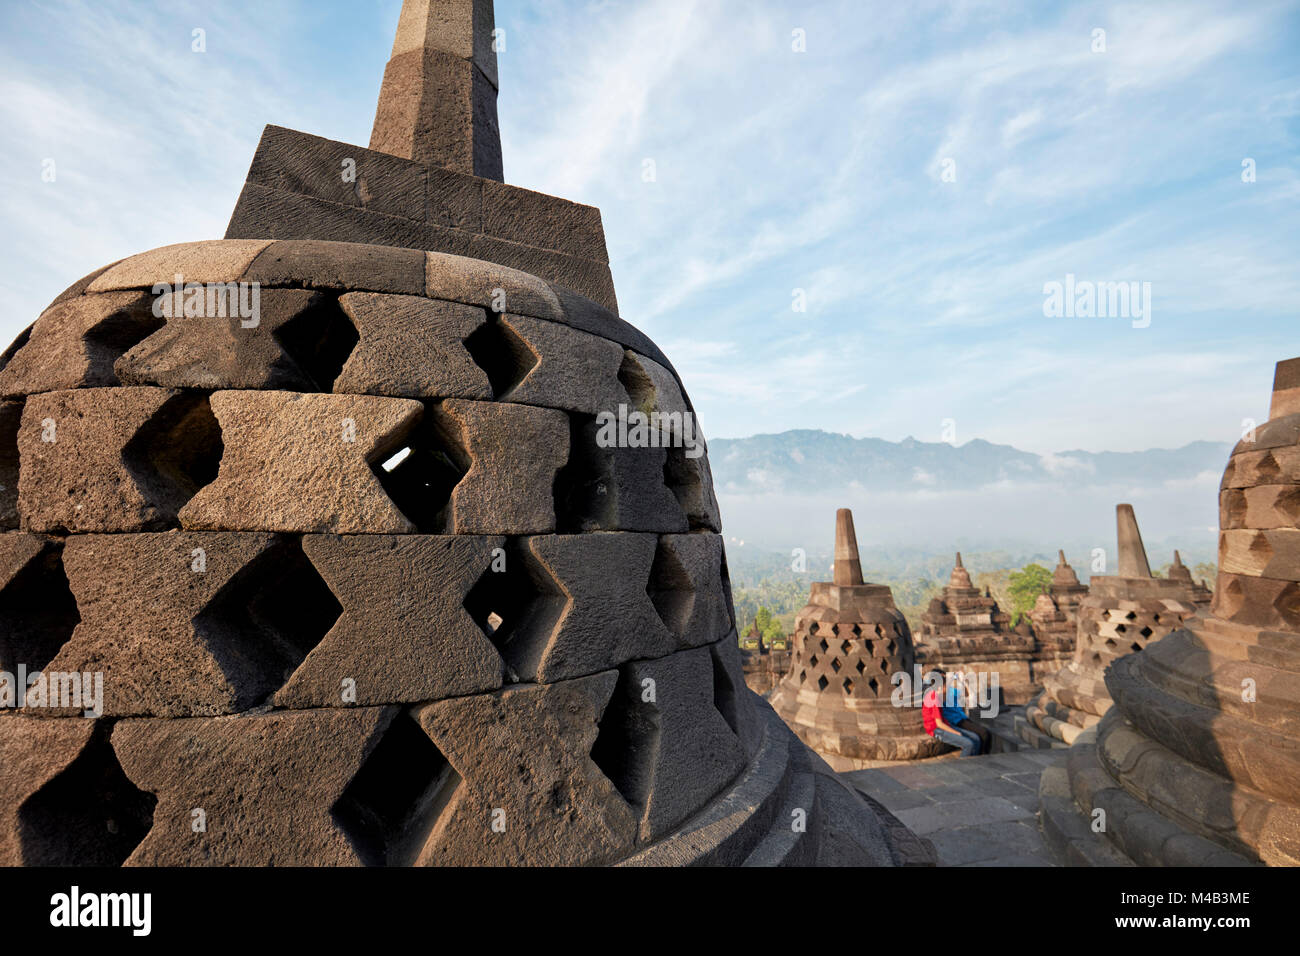 Los rombos perforados stupas en el templo budista de Borobudur. Regency Magelang, Java, Indonesia. Foto de stock